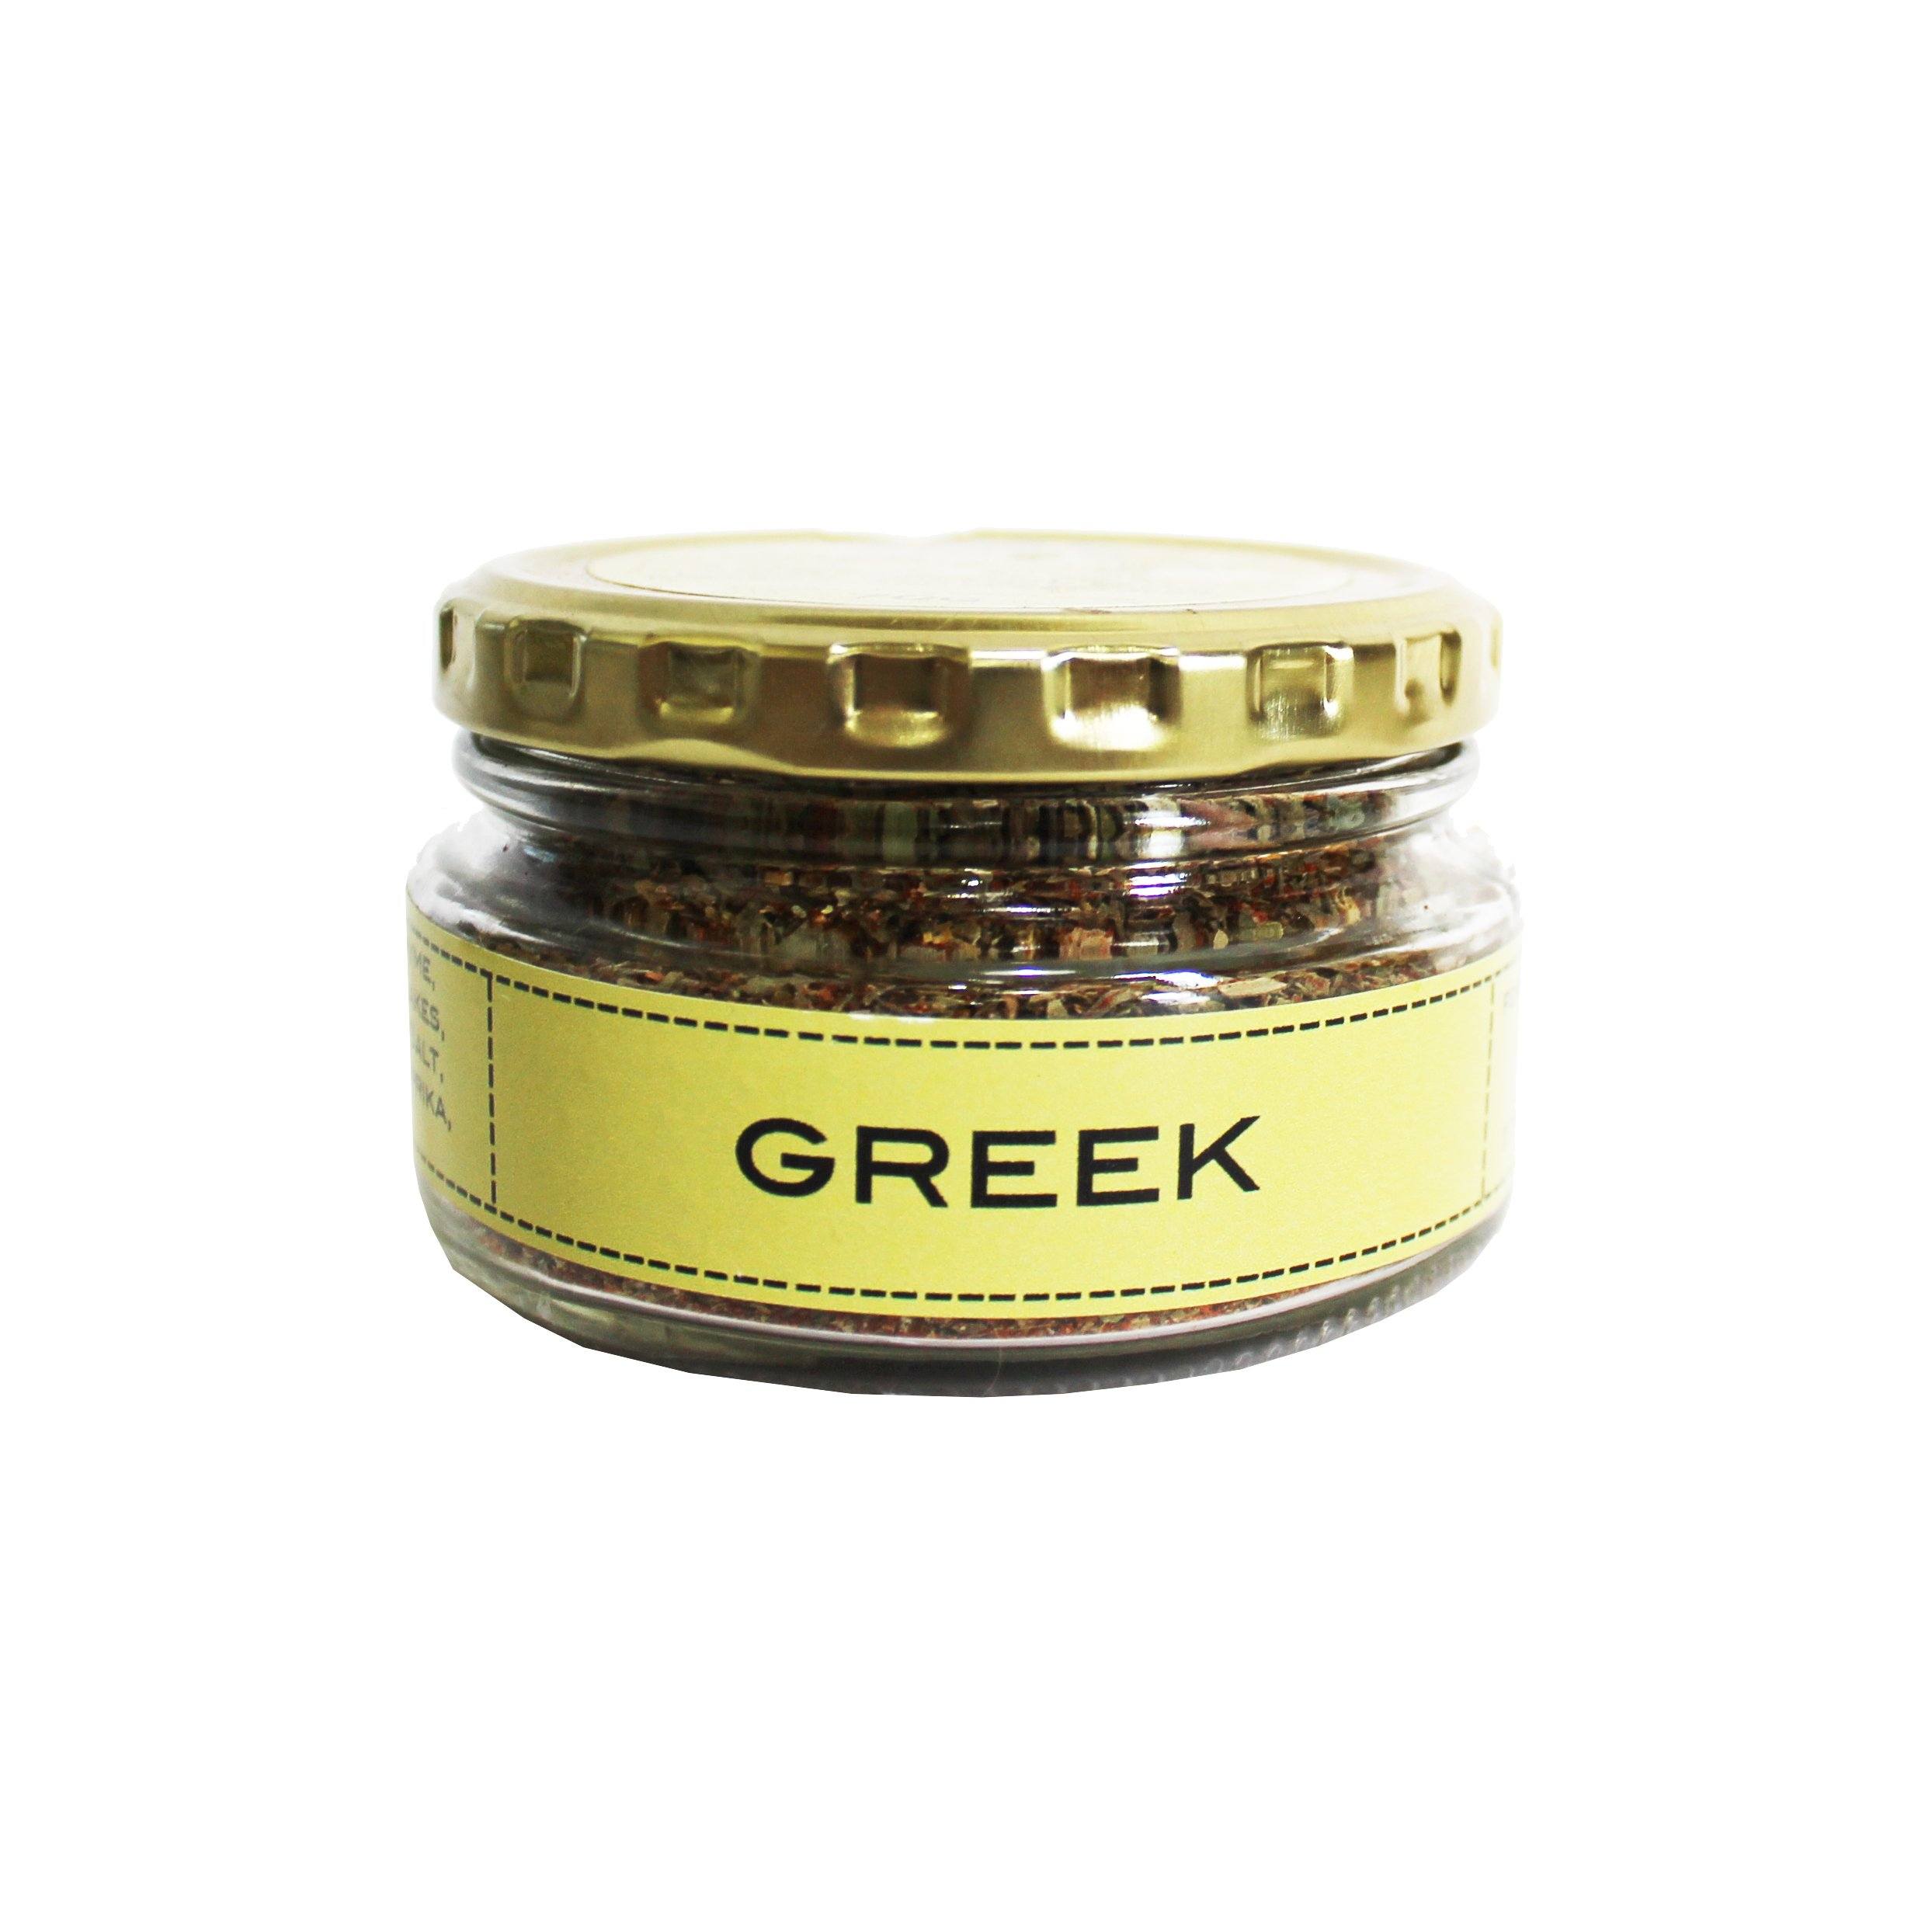 Get Spice Greek Spice 70g Salts, Herbs & Spices Get Spice 